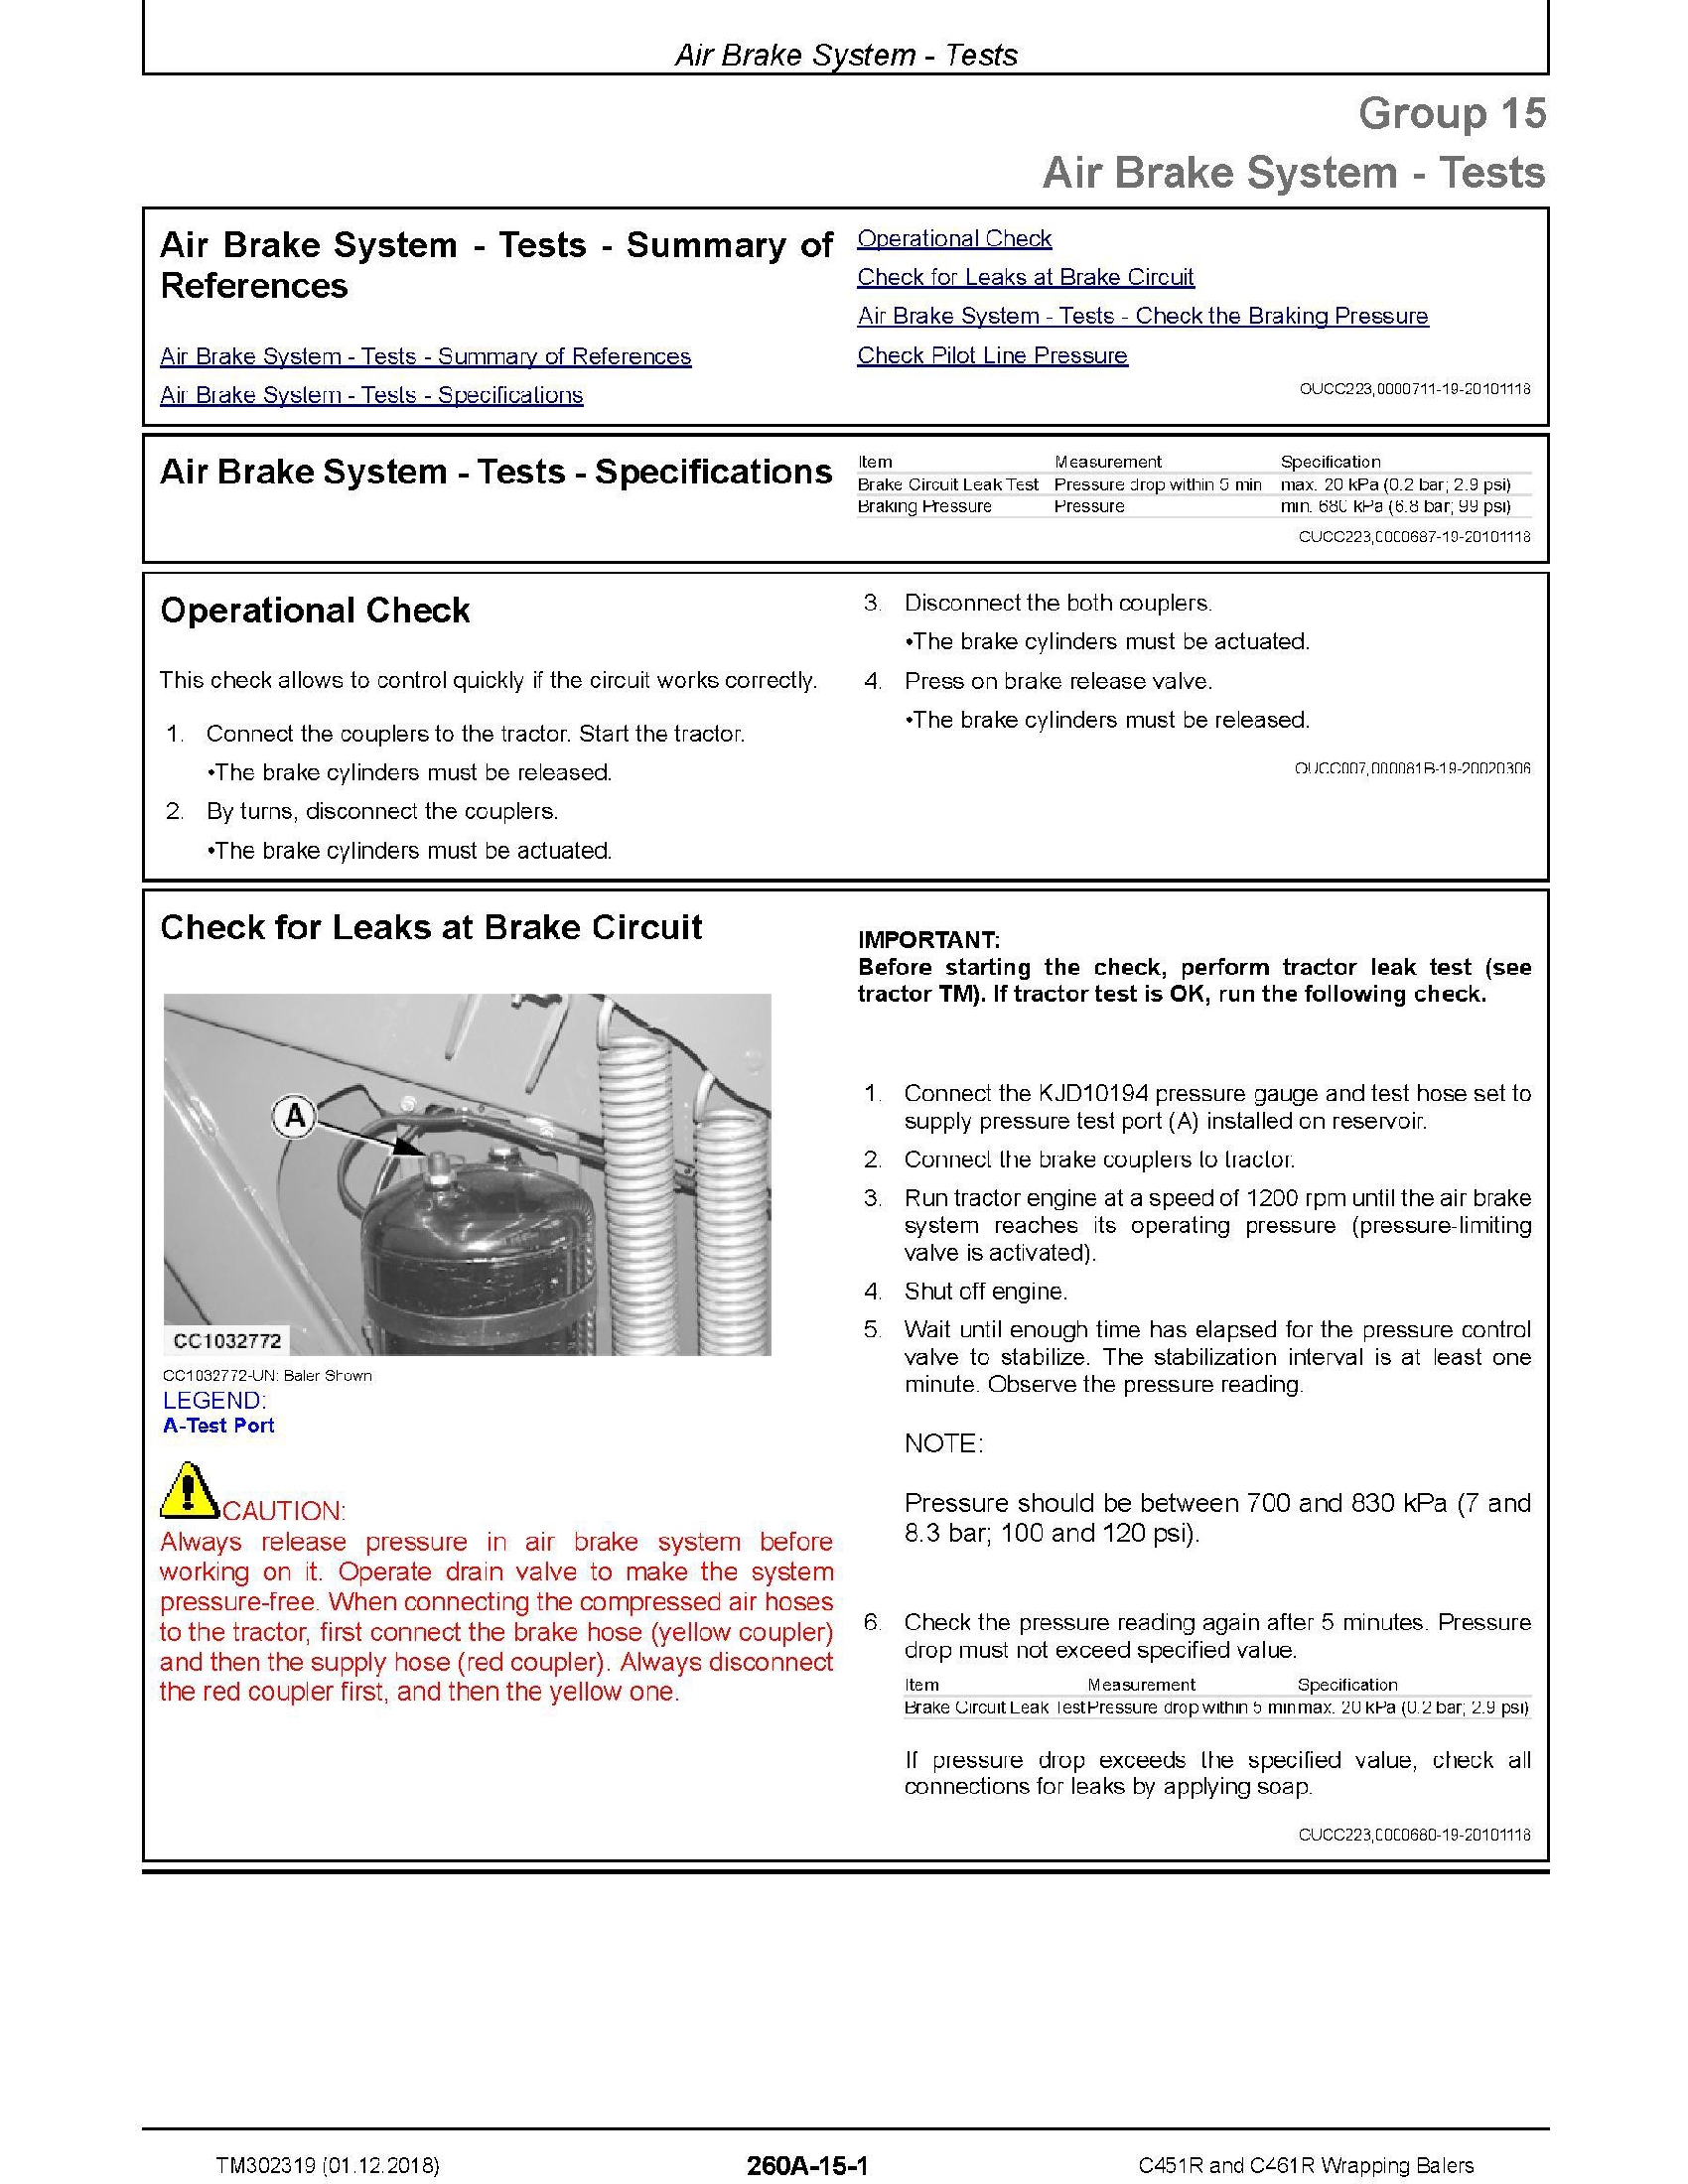 John Deere 6615 manual pdf